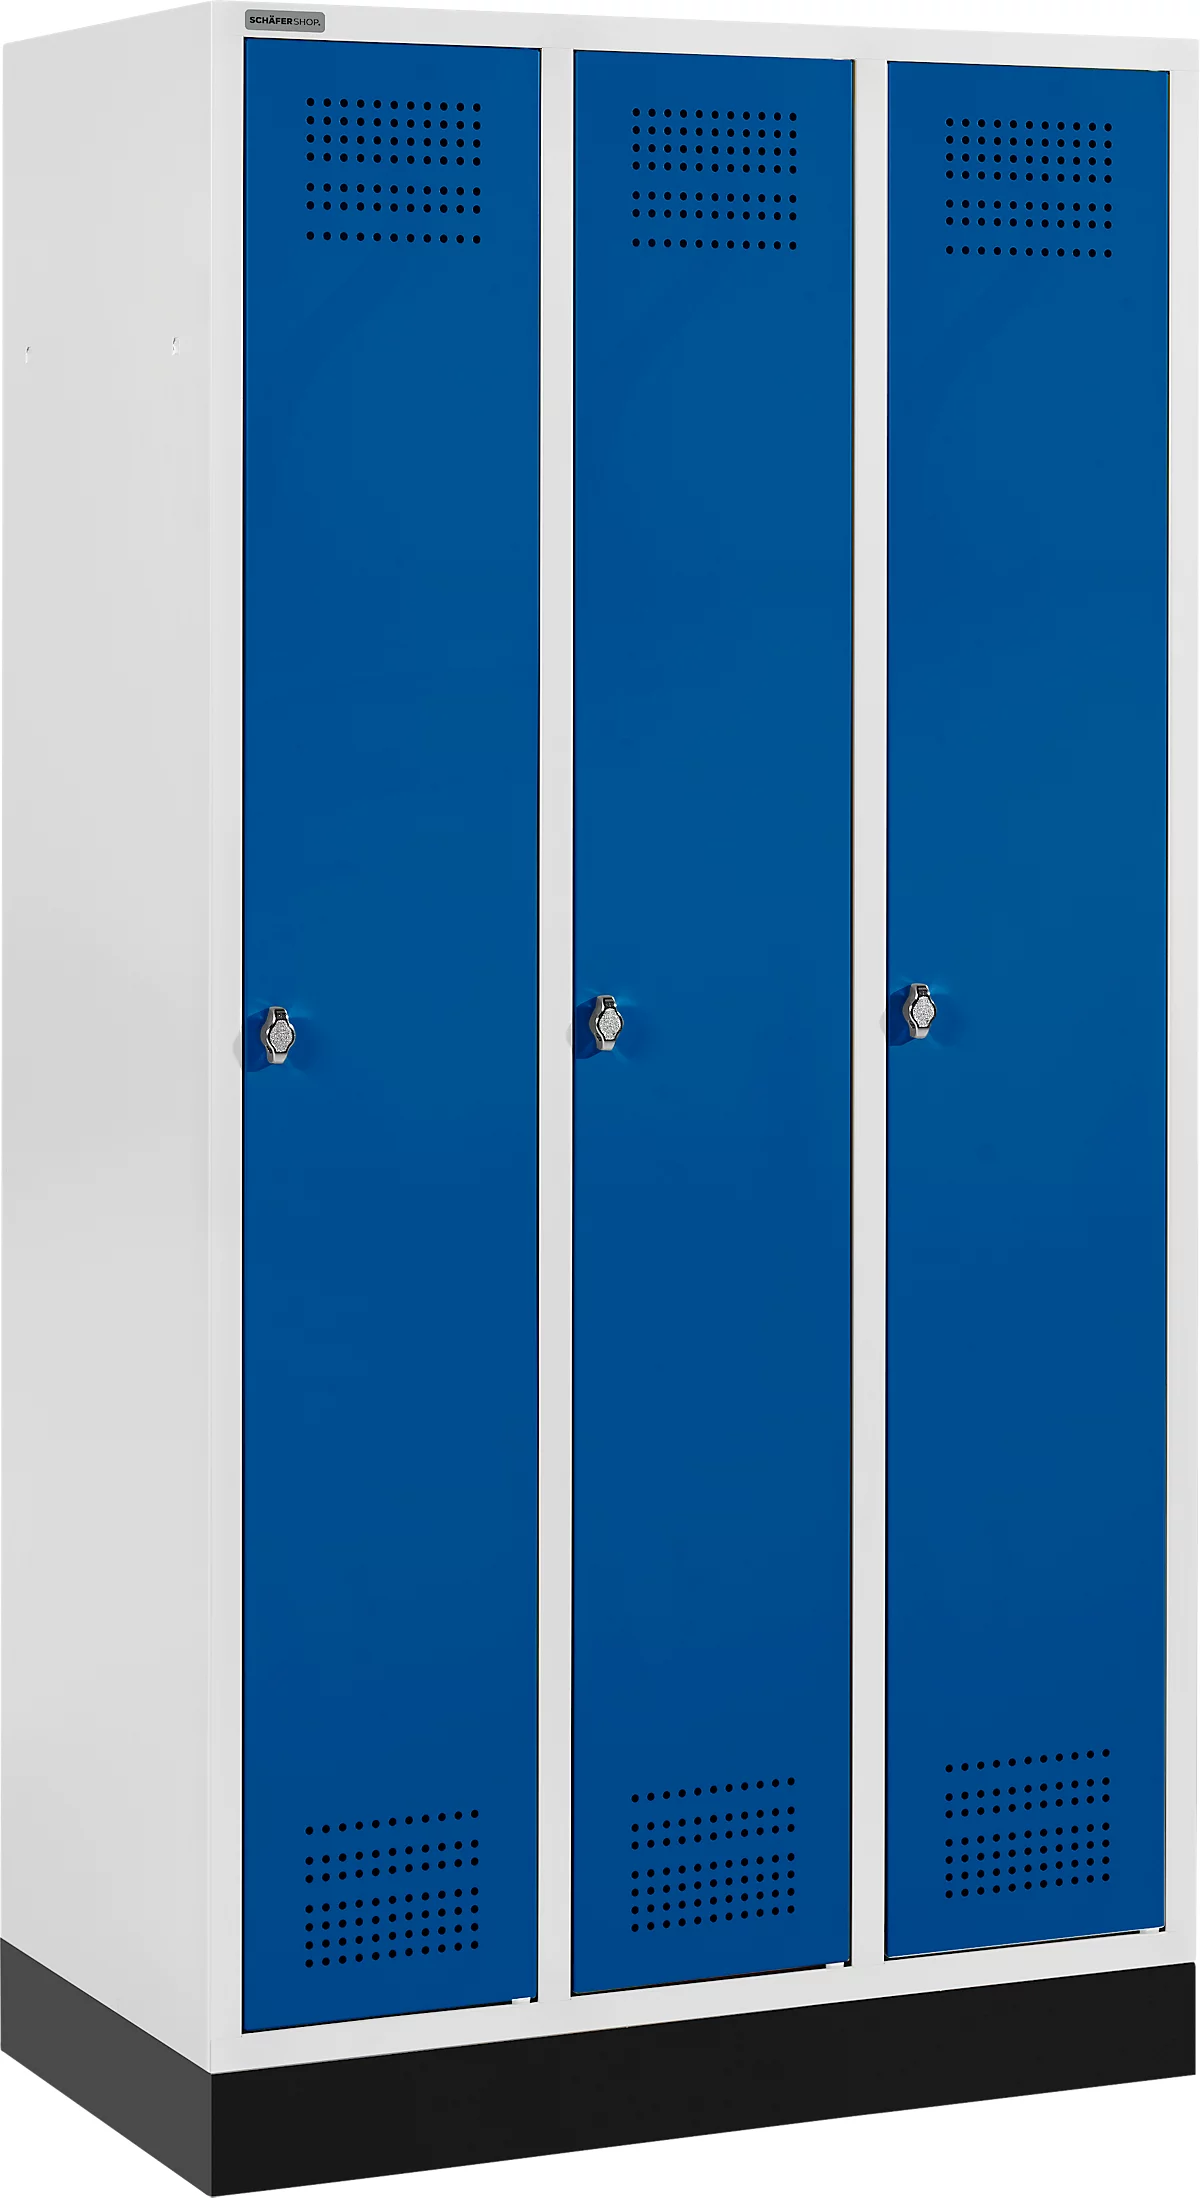 Schäfer Shop Genius Taquilla con zócalo, 3 compartimentos, cierre de pasador giratorio de seguridad, gris luminoso/azul genciana